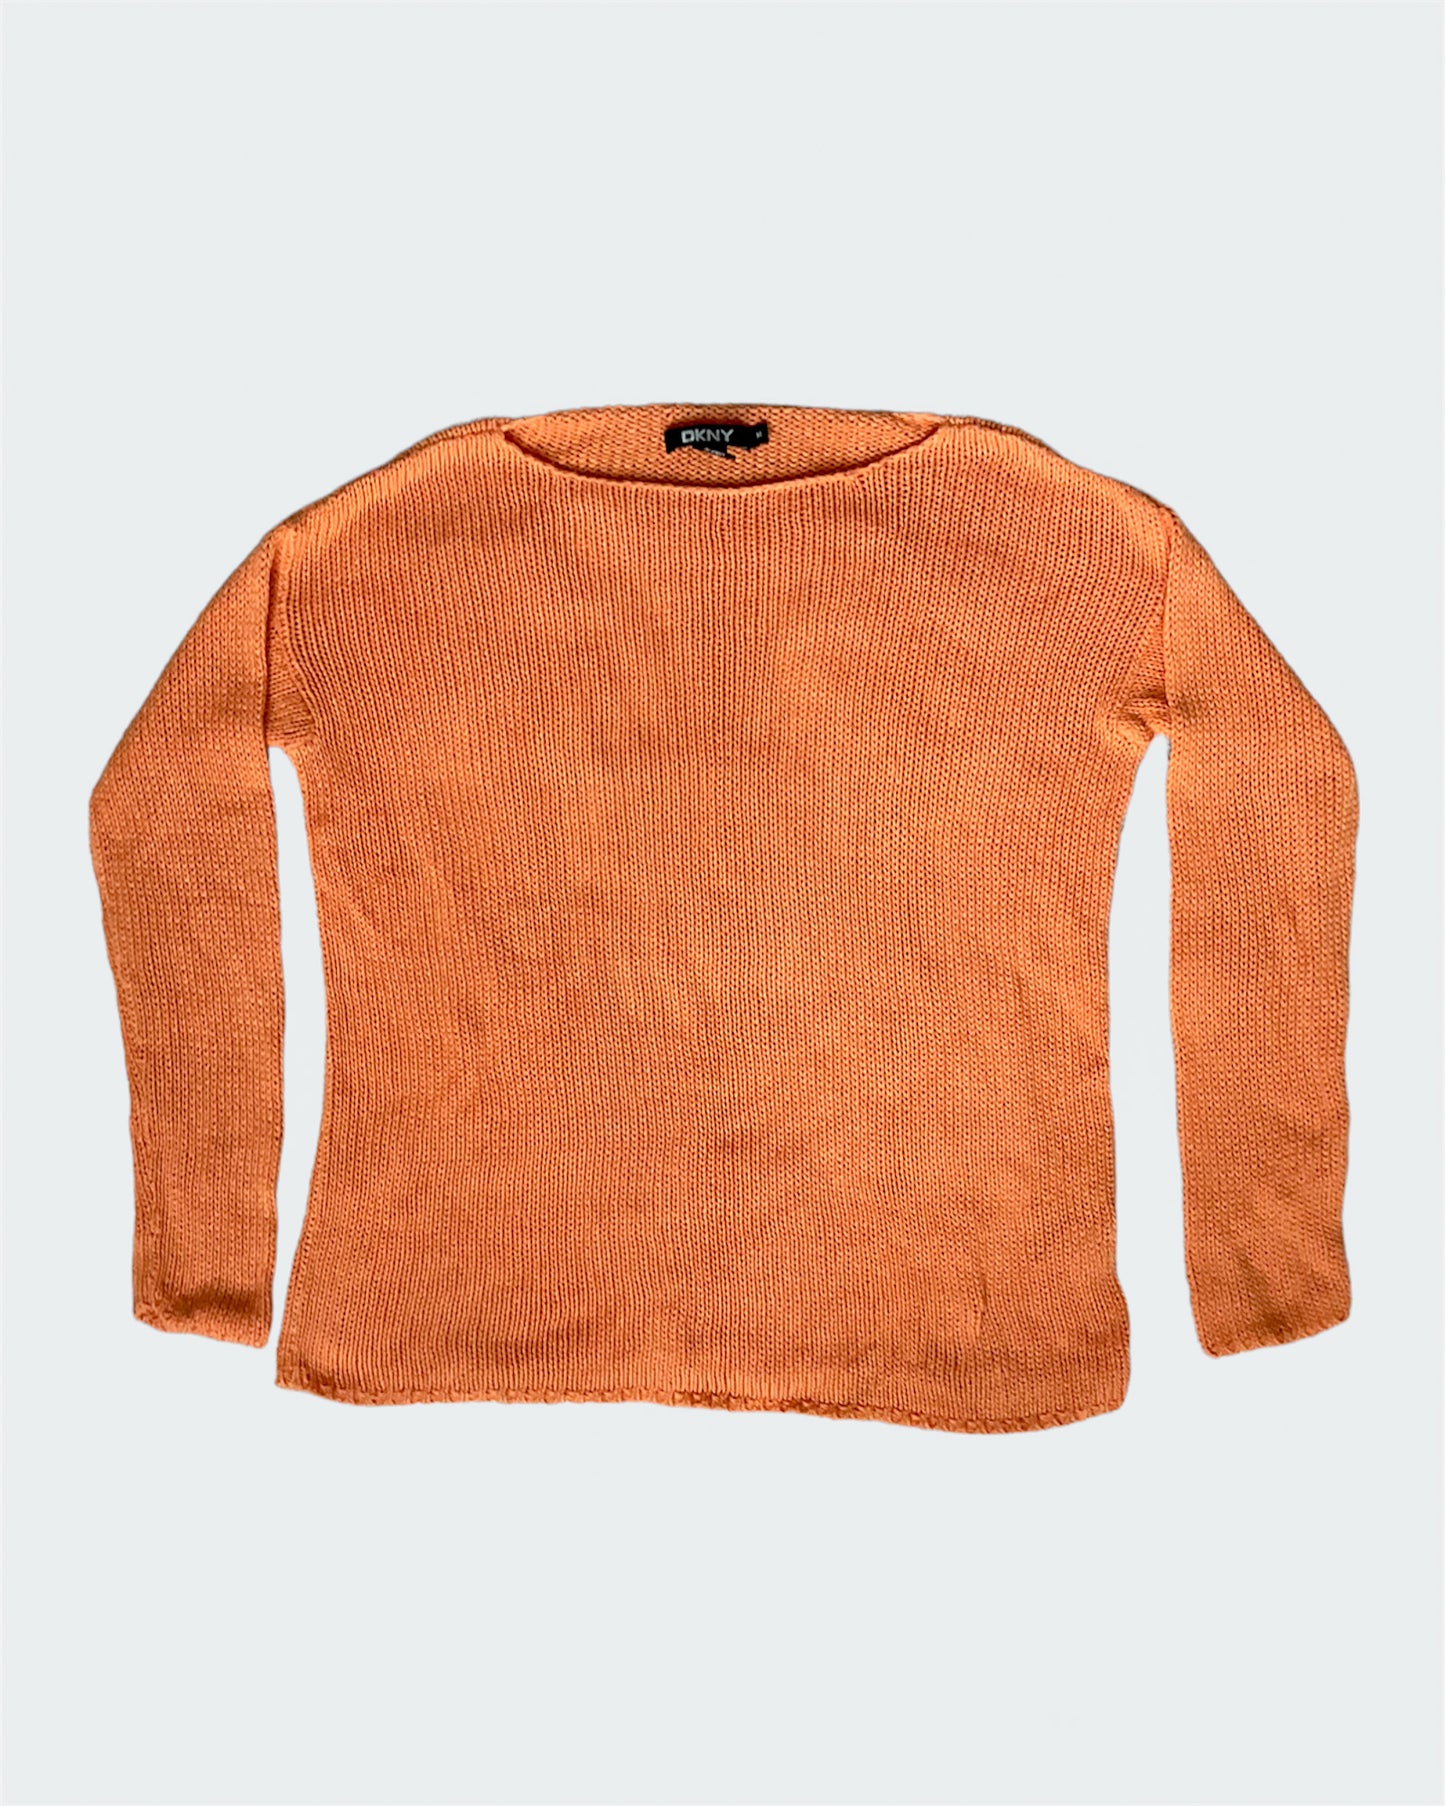 DKNY Orange Loose Knit Sweater